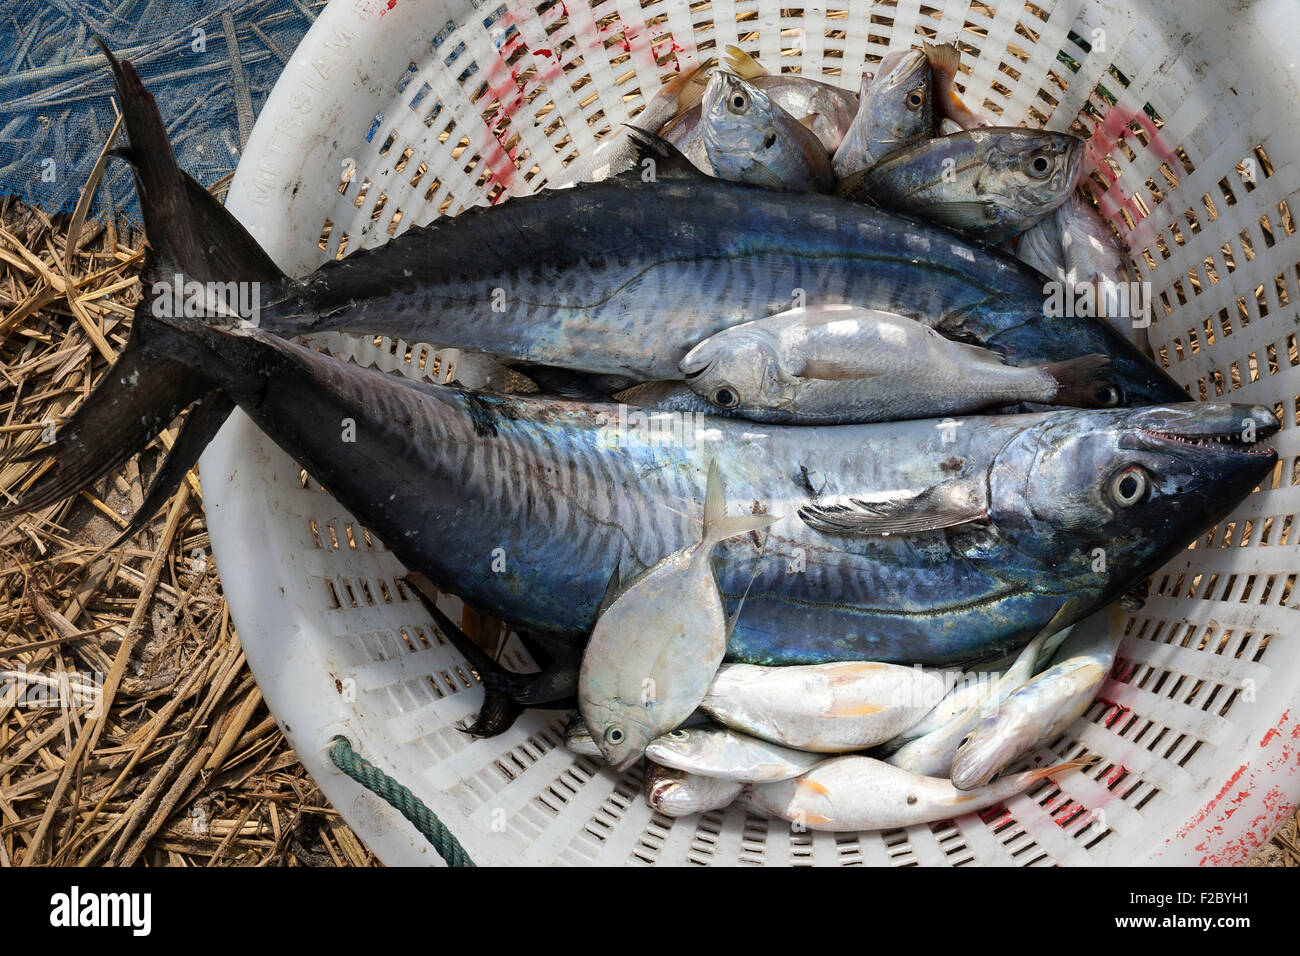 Freshly caught fish in a basket, mackerel and small fish, fishing village of Ngapali, Thandwe, Rakhine State, Myanmar Stock Photo